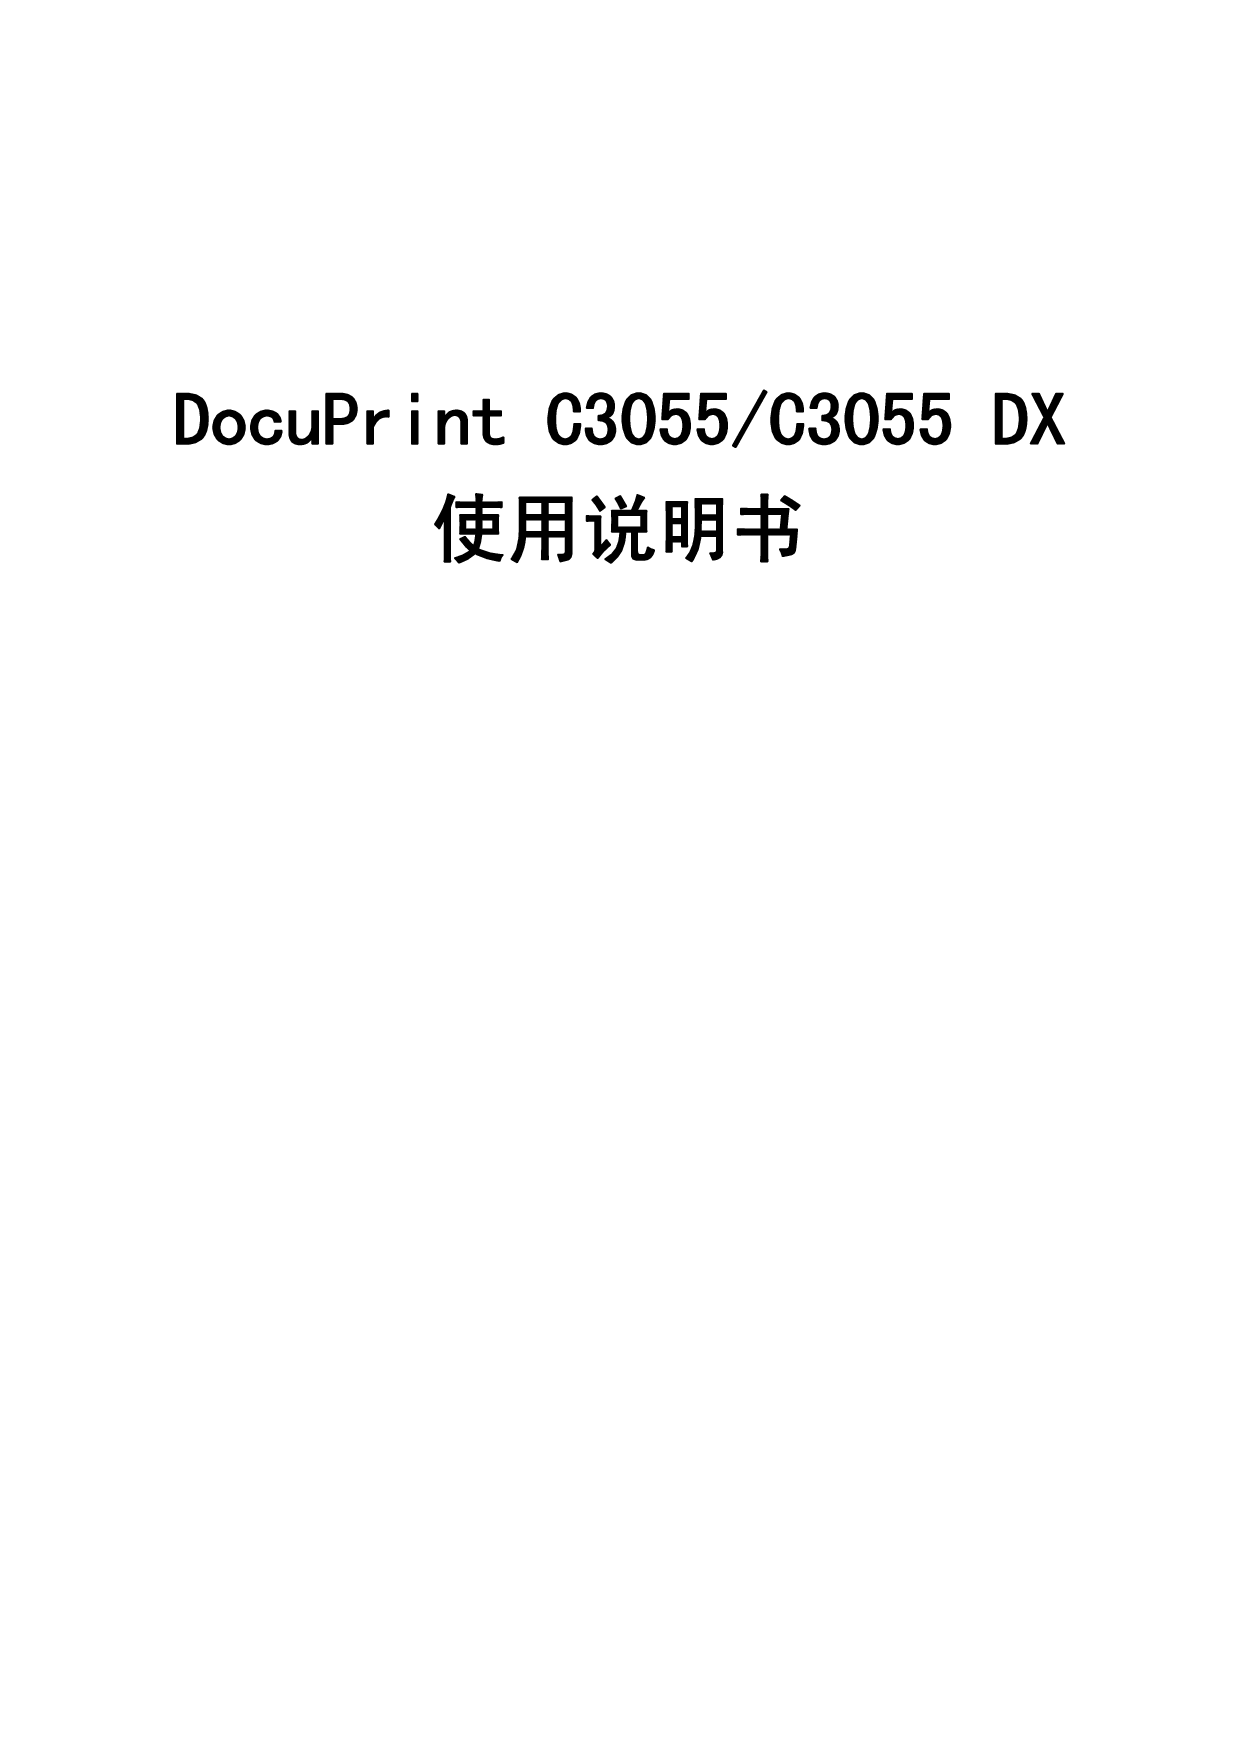 富士施乐 Fuji Xerox DocuPrint C3055 使用说明书 封面